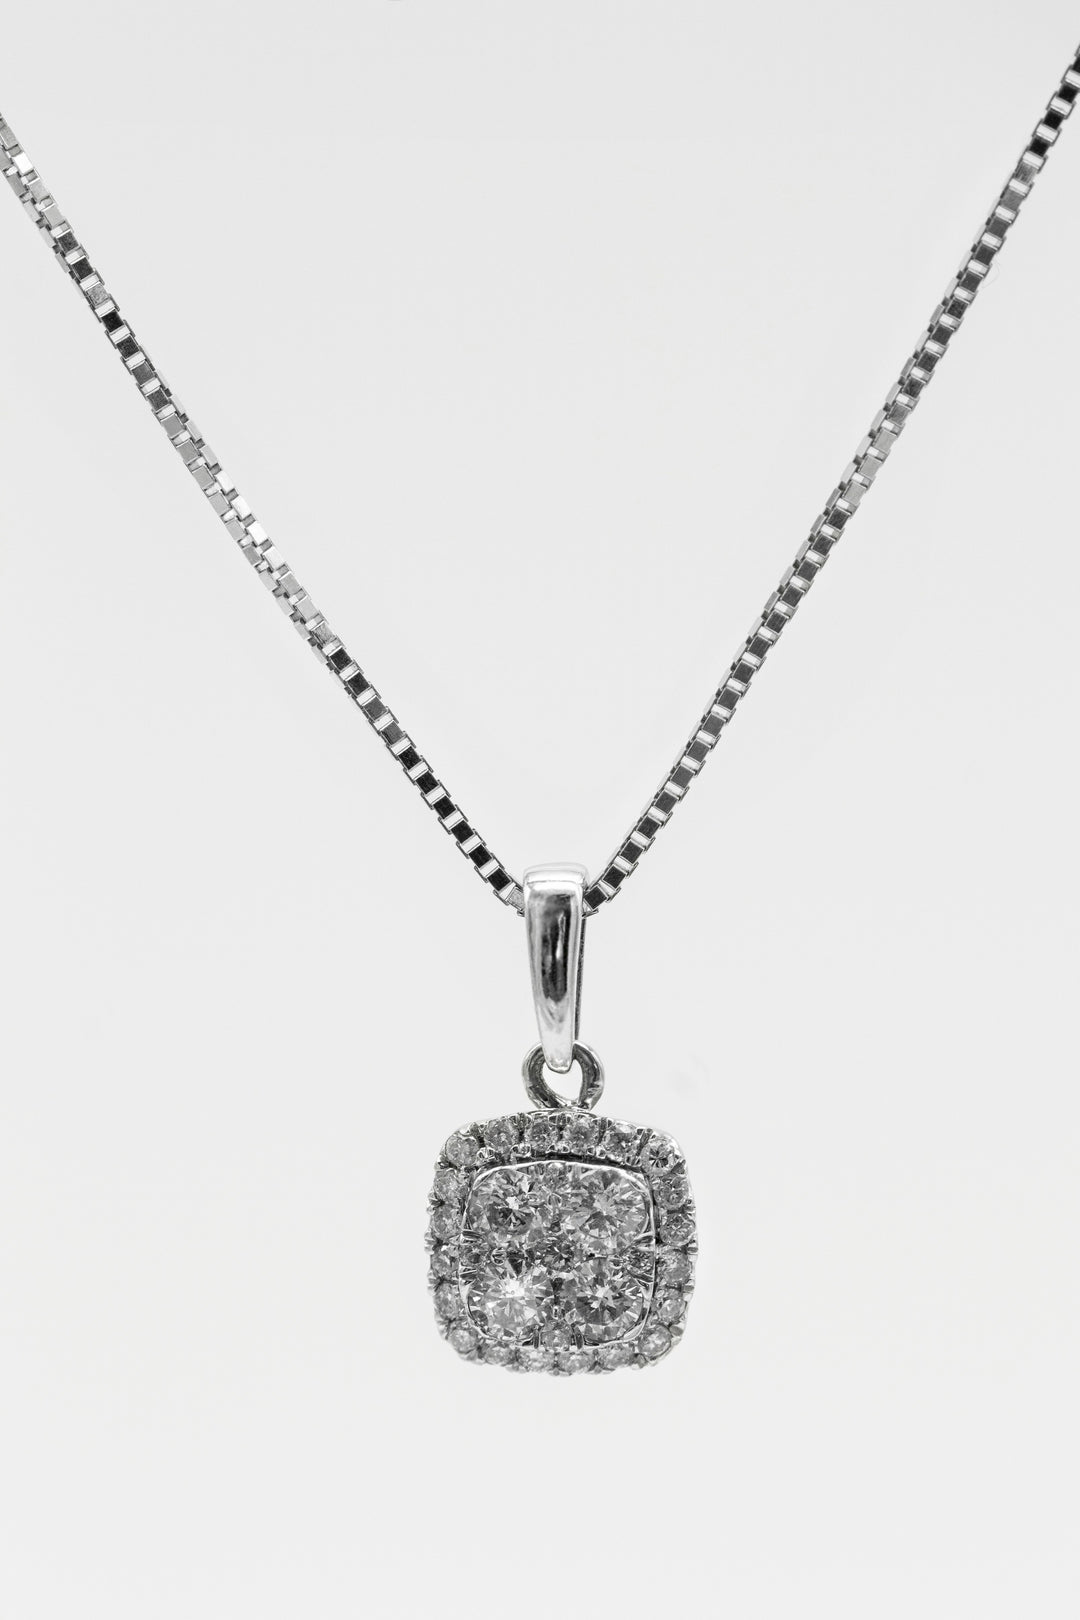 Custom Diamond Necklaces in Midlothian, VA 